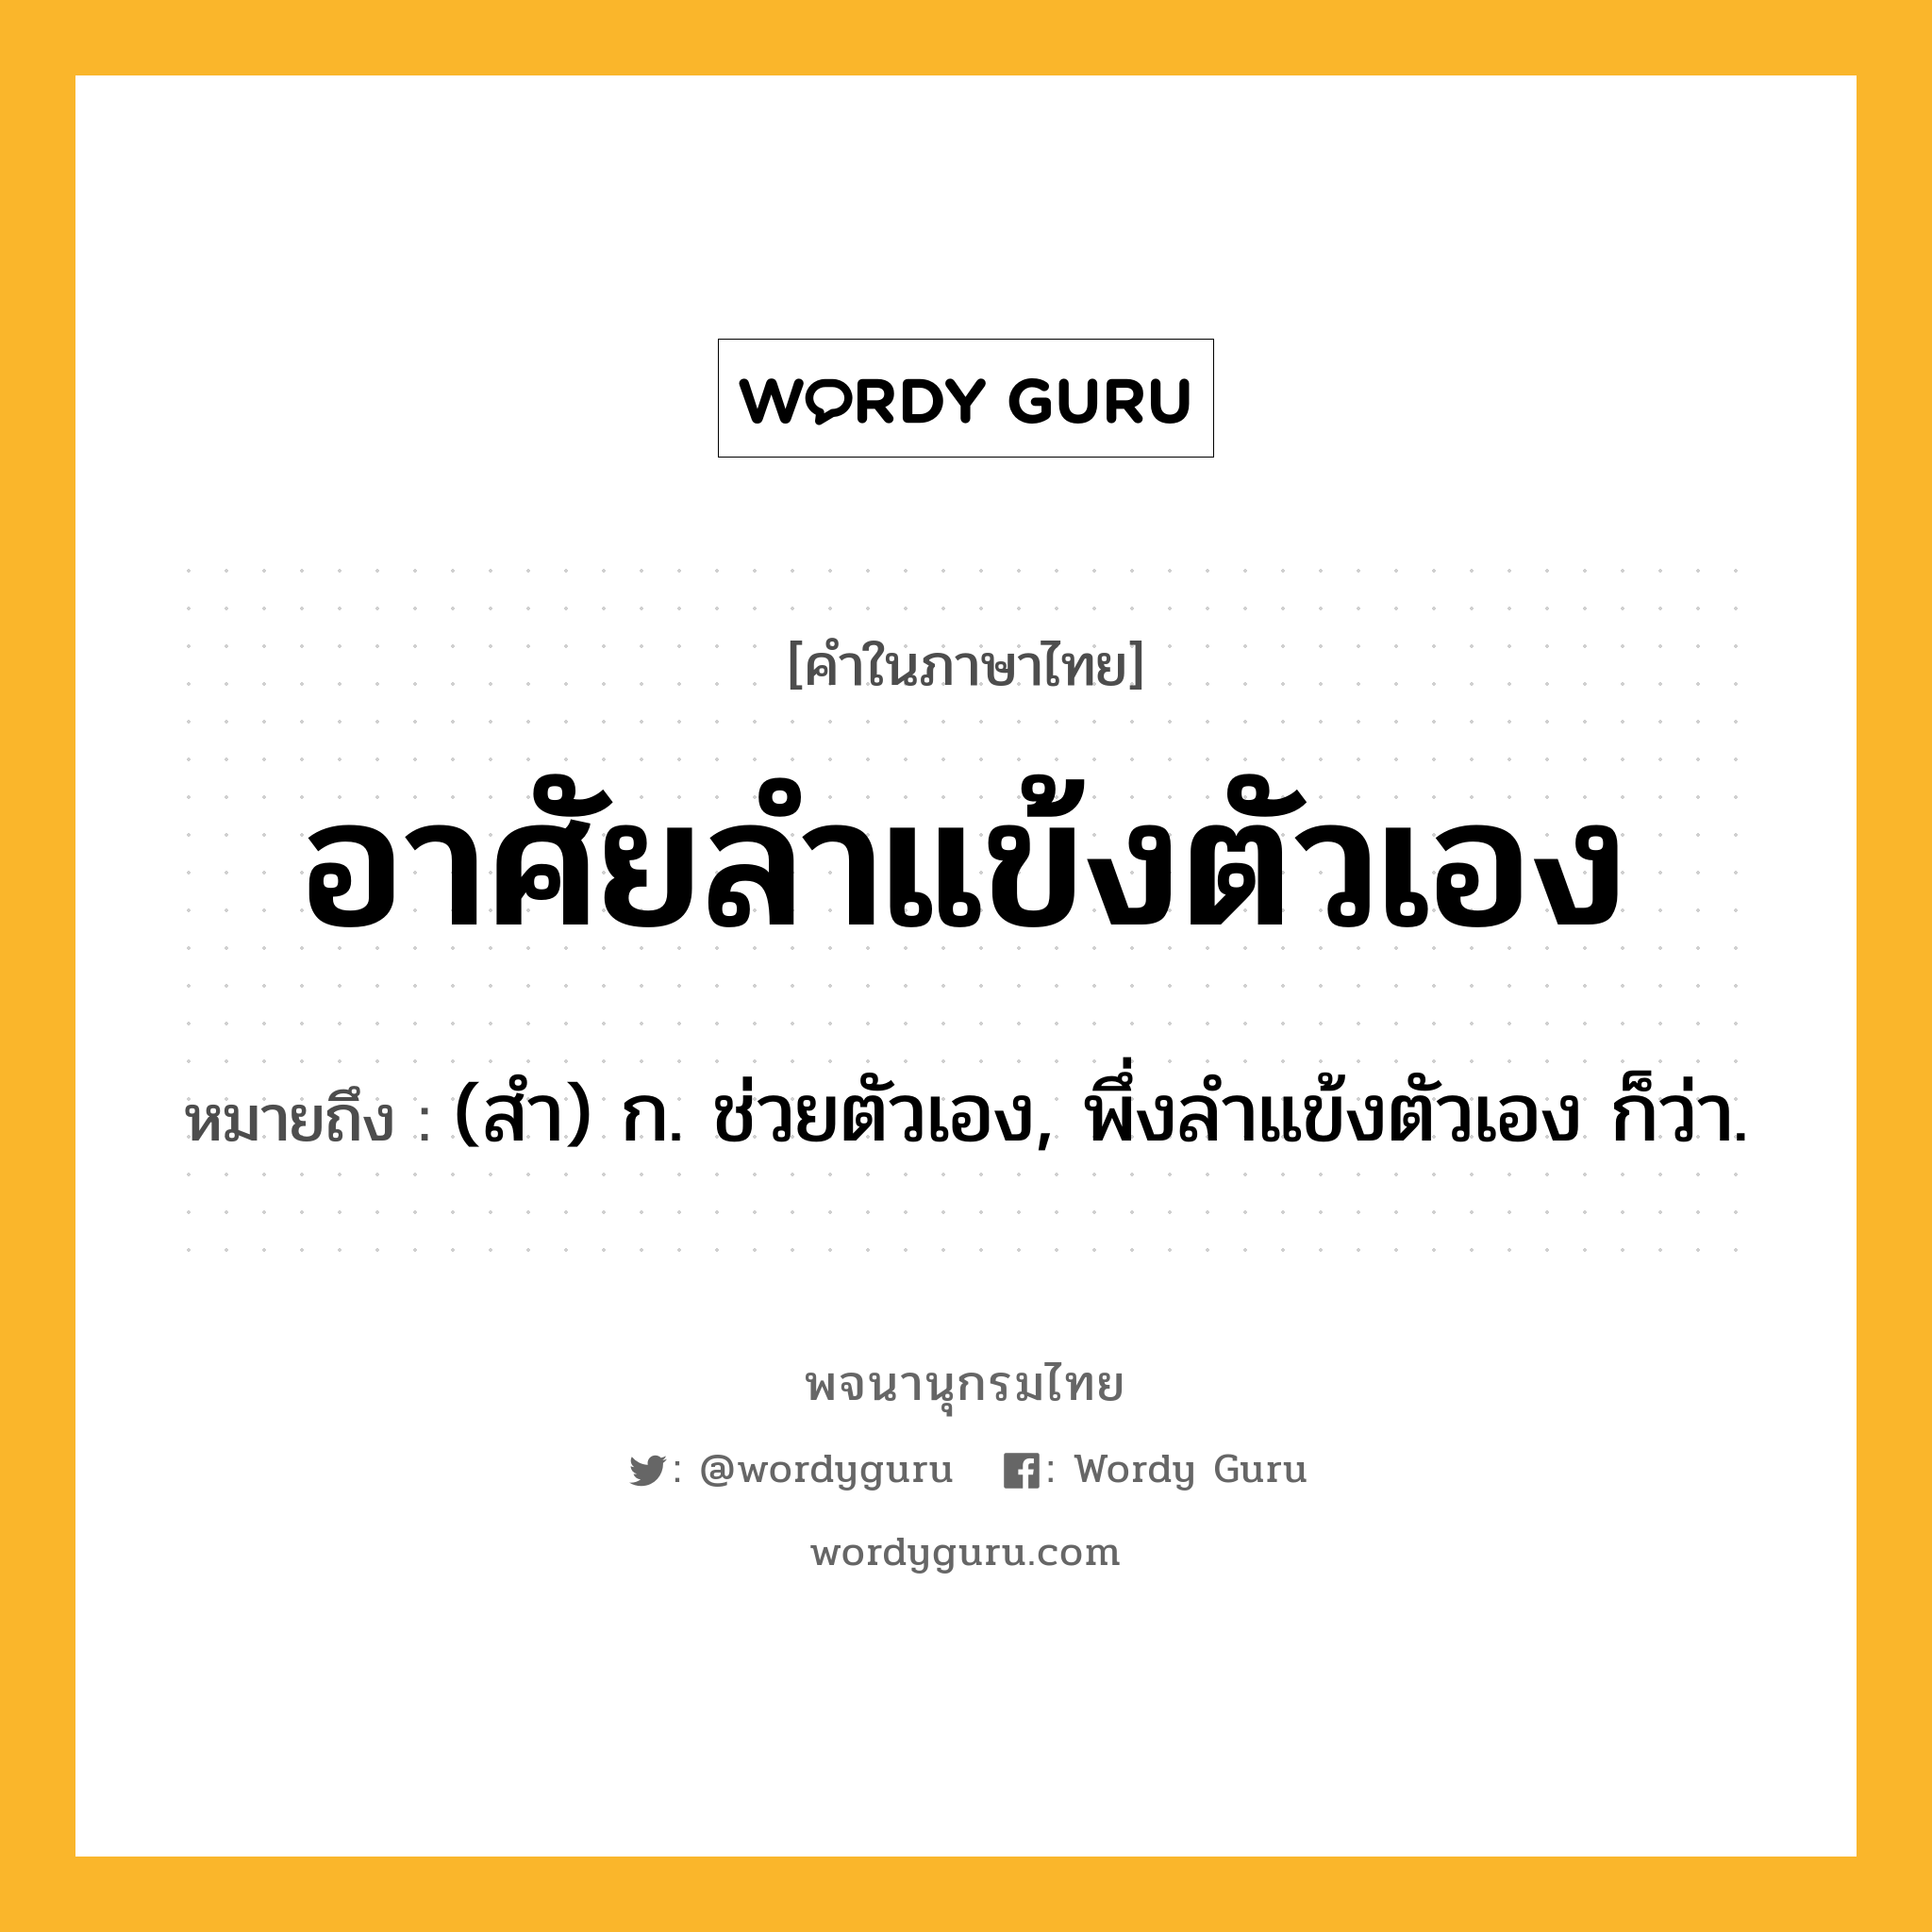 อาศัยลำแข้งตัวเอง หมายถึงอะไร?, คำในภาษาไทย อาศัยลำแข้งตัวเอง หมายถึง (สํา) ก. ช่วยตัวเอง, พึ่งลําแข้งตัวเอง ก็ว่า.